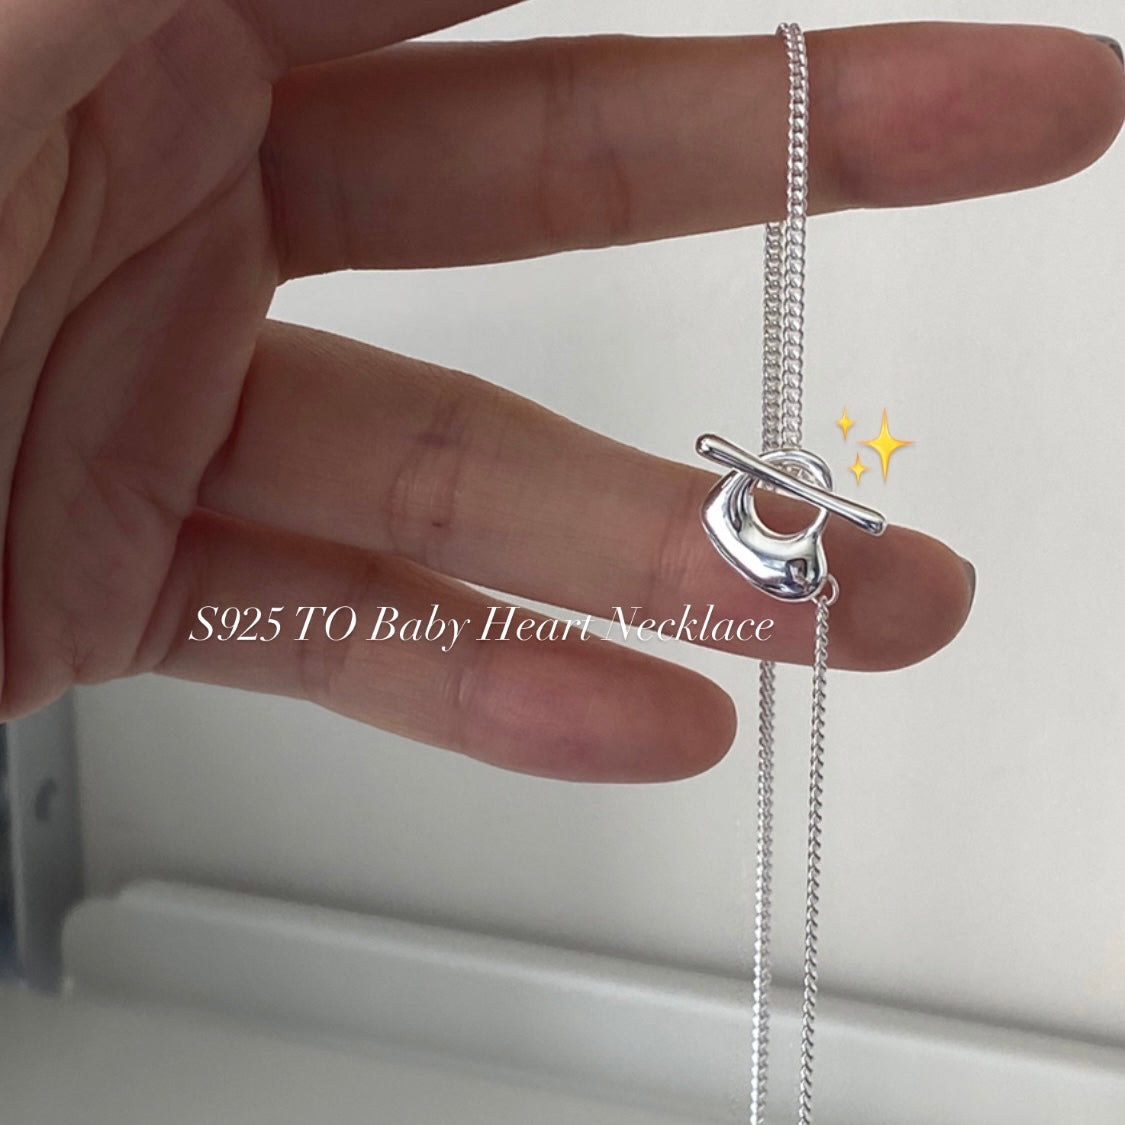 推薦款📣[925silver] TO Baby Heart Necklace